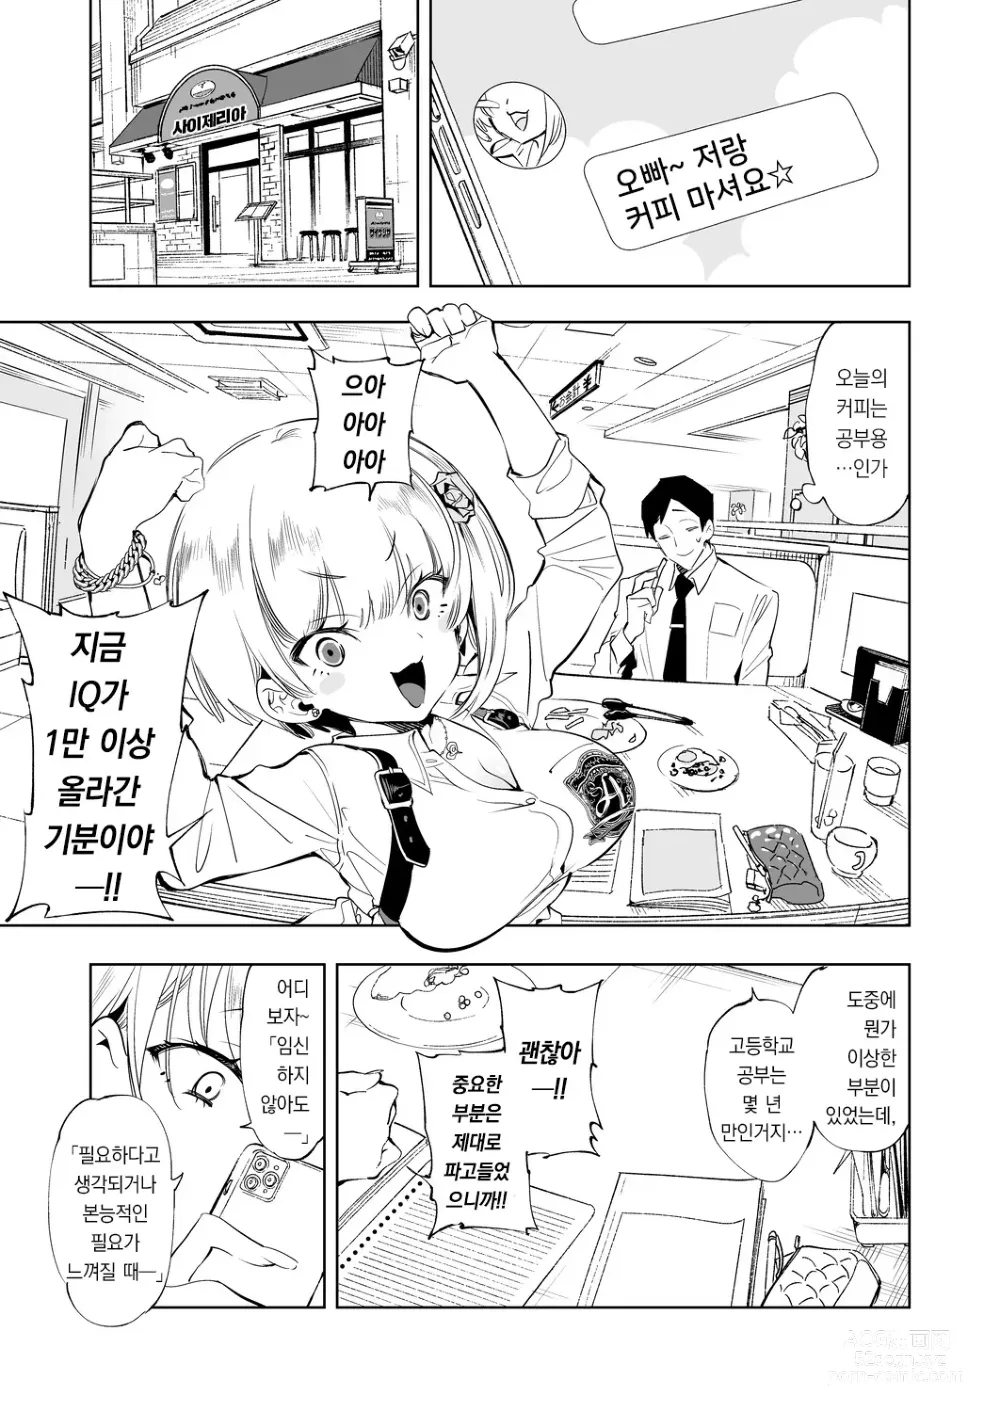 Page 5 of doujinshi 오빠, 우리들이랑 커피 마시러 갈래? 3